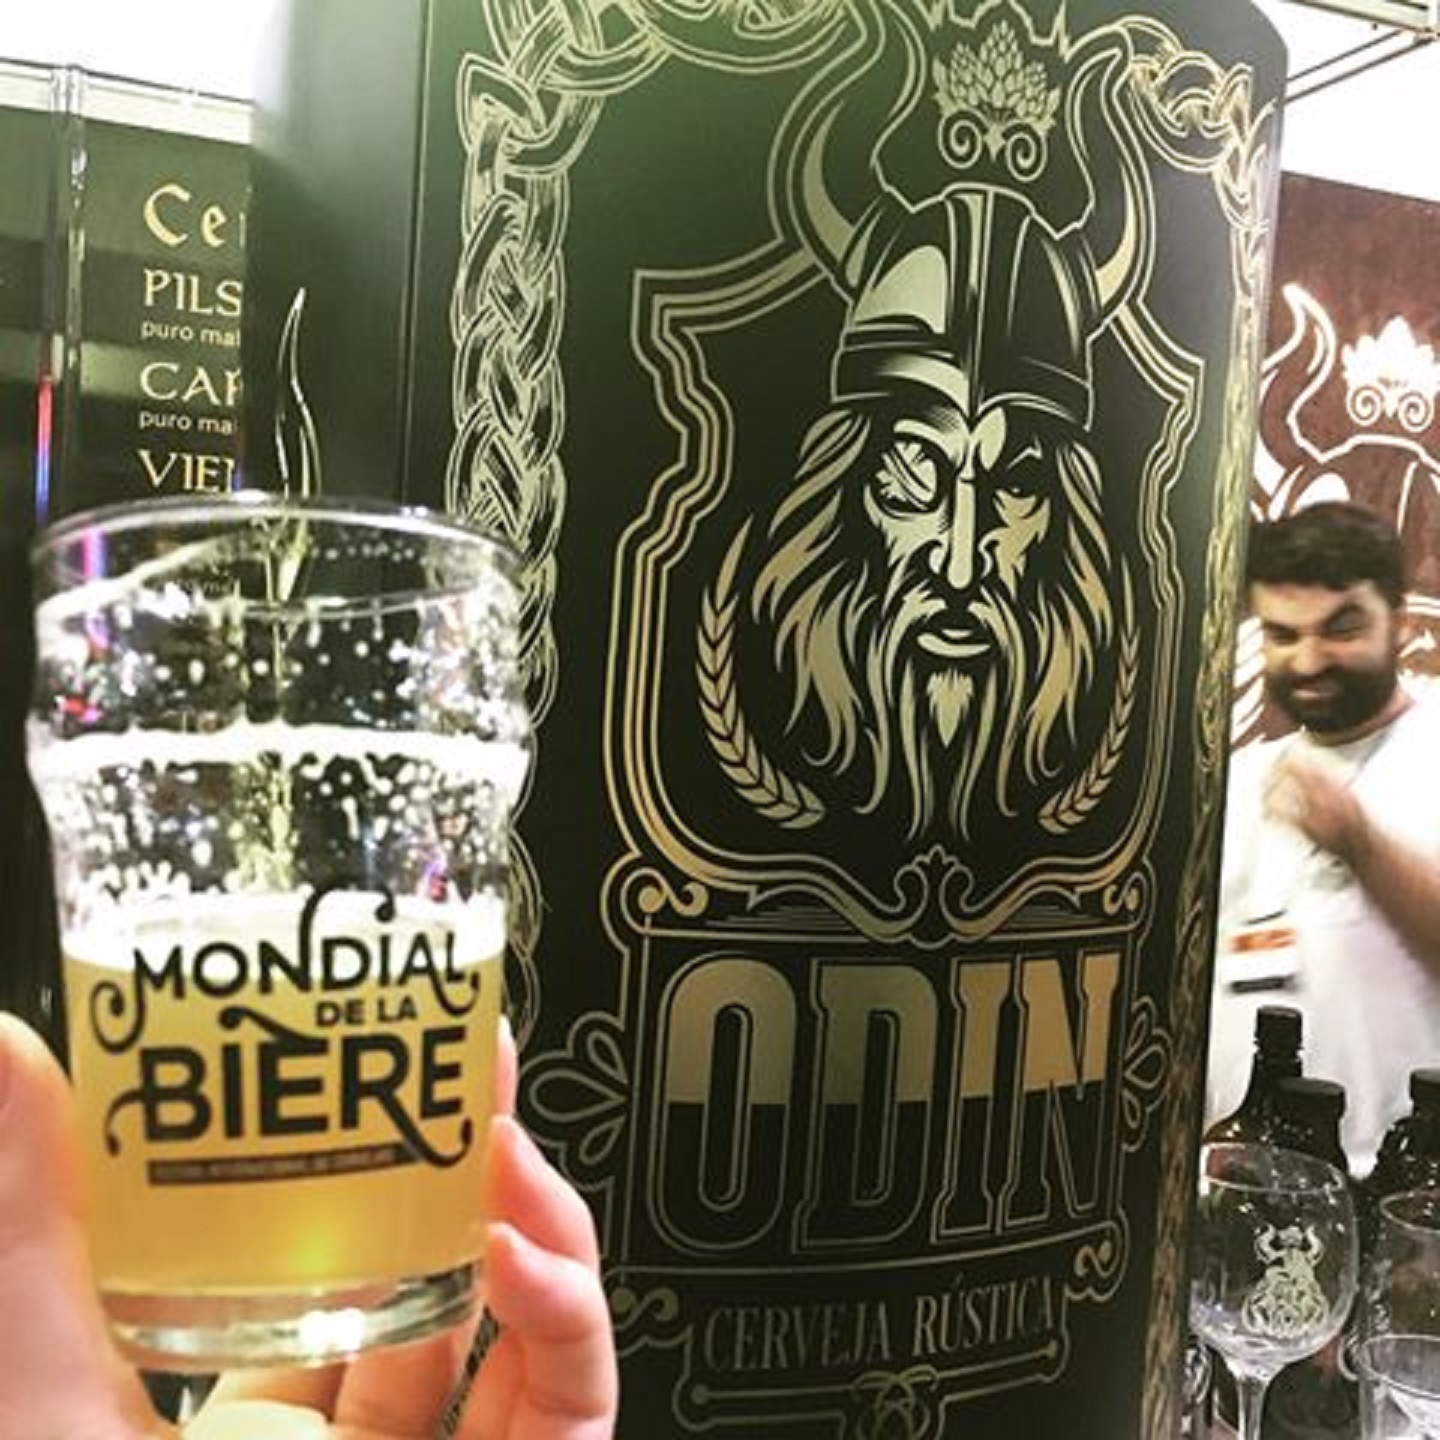 Cervejarias Guapa e Odin participam do Encontro Carioca de Cervejarias